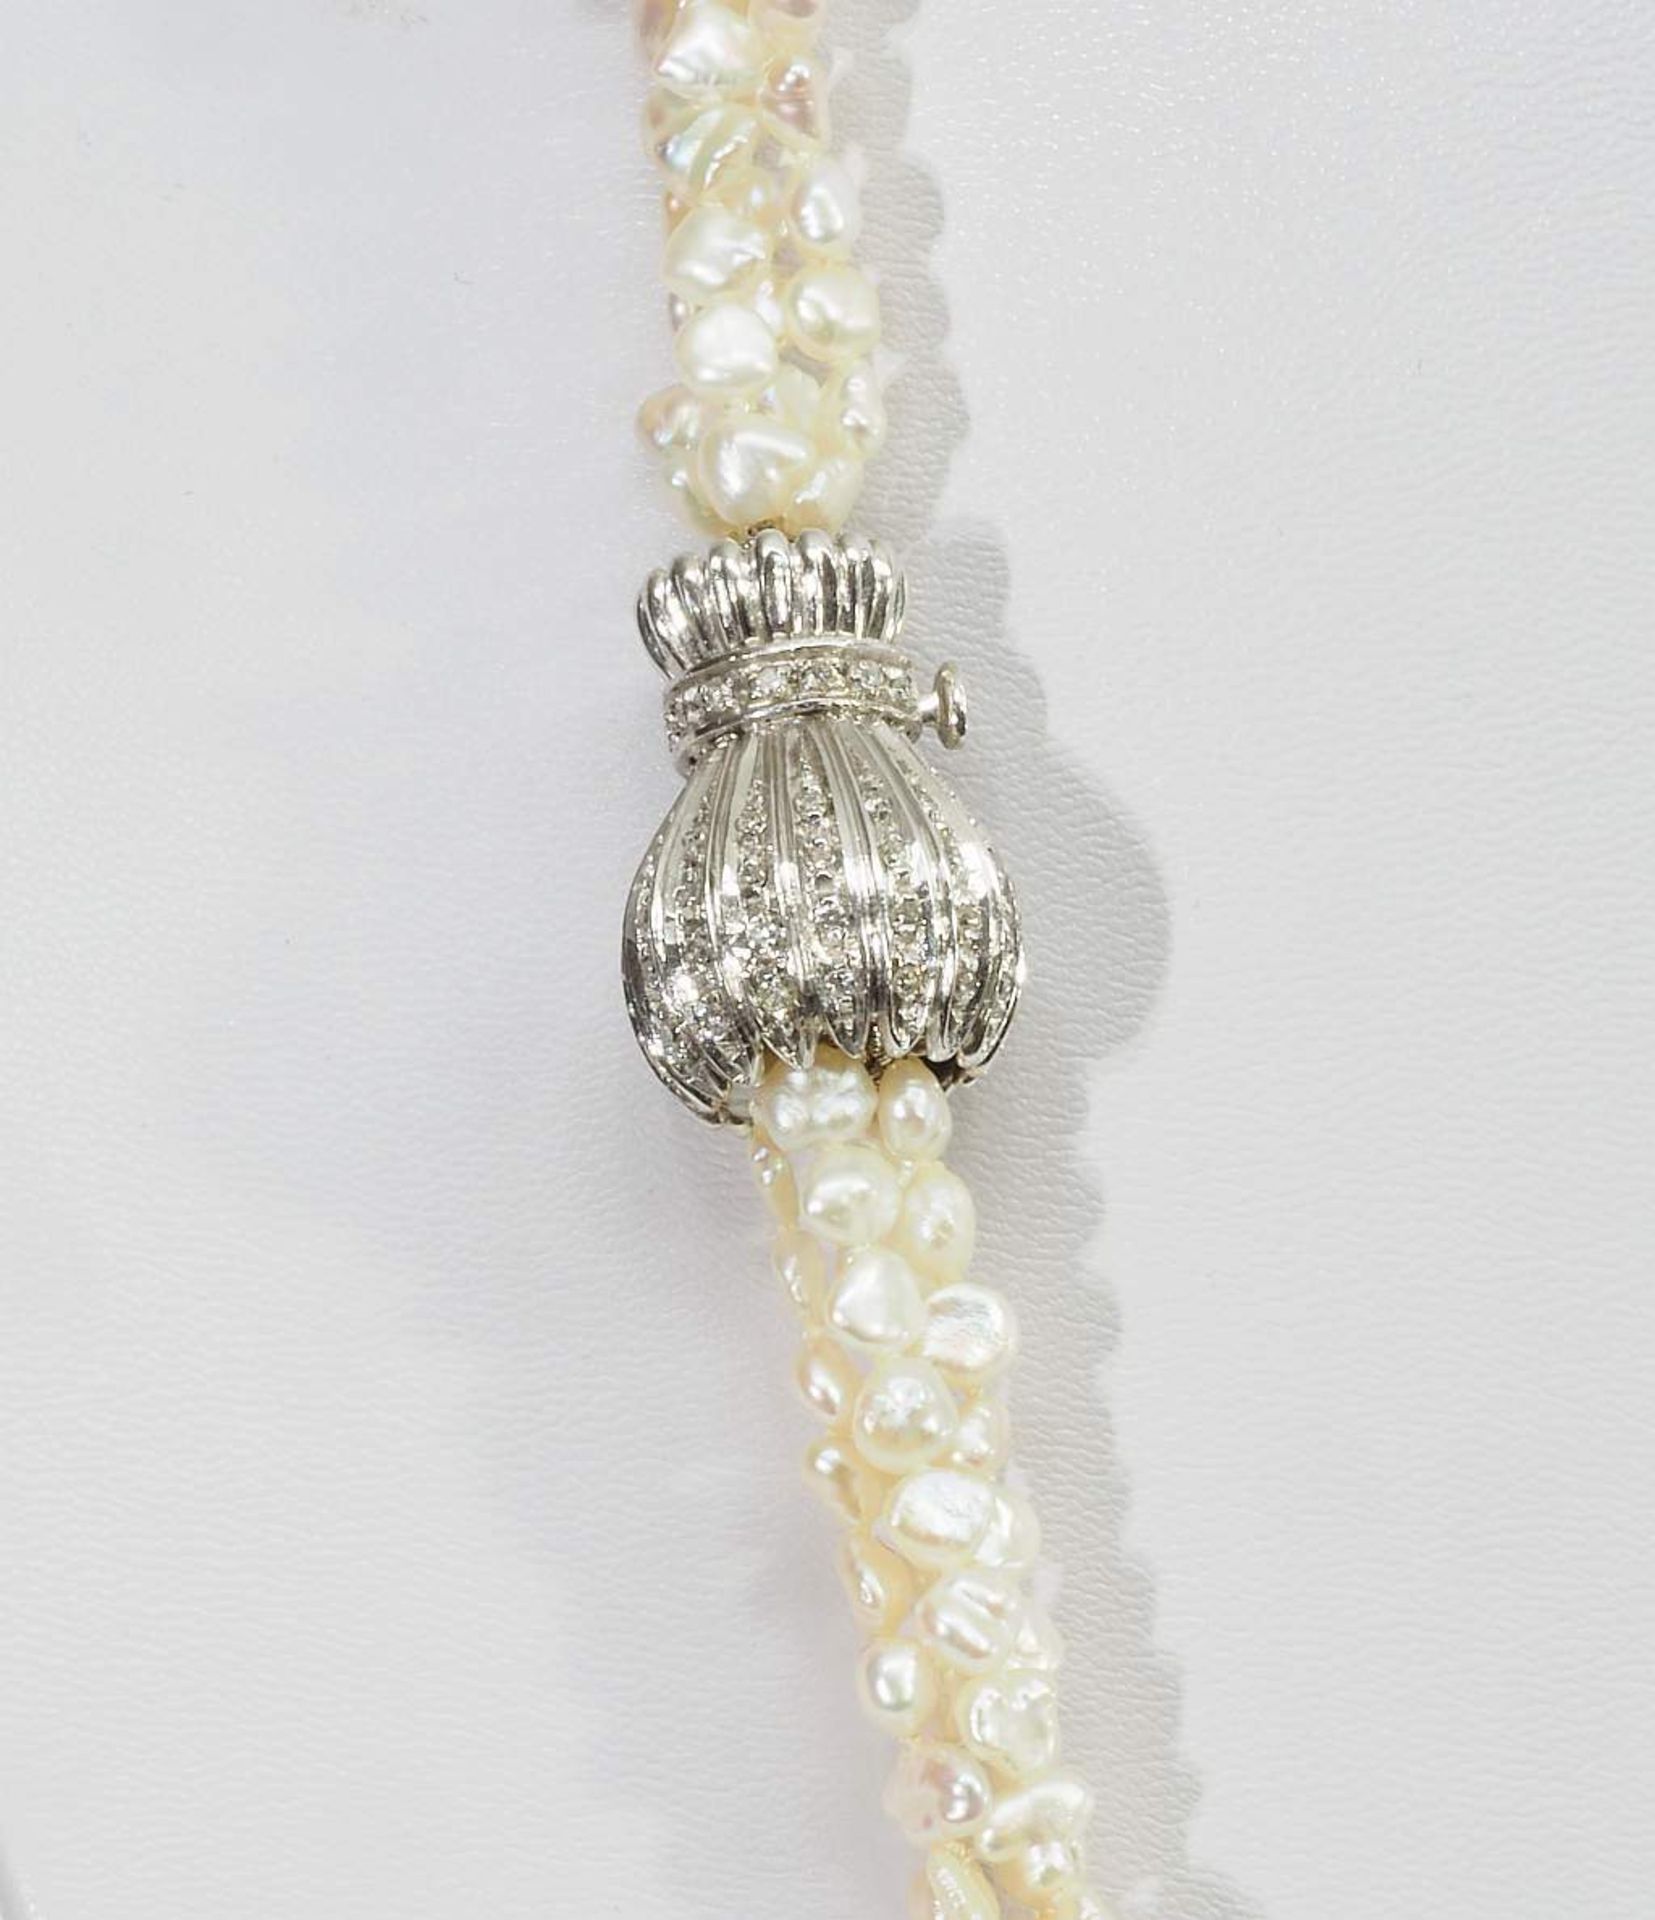 Keshi /Süsswasser-Perlenkette in weiß mit vier Strängen. Keshi /Süsswasser-Perlenkette in weiß mit - Bild 4 aus 7